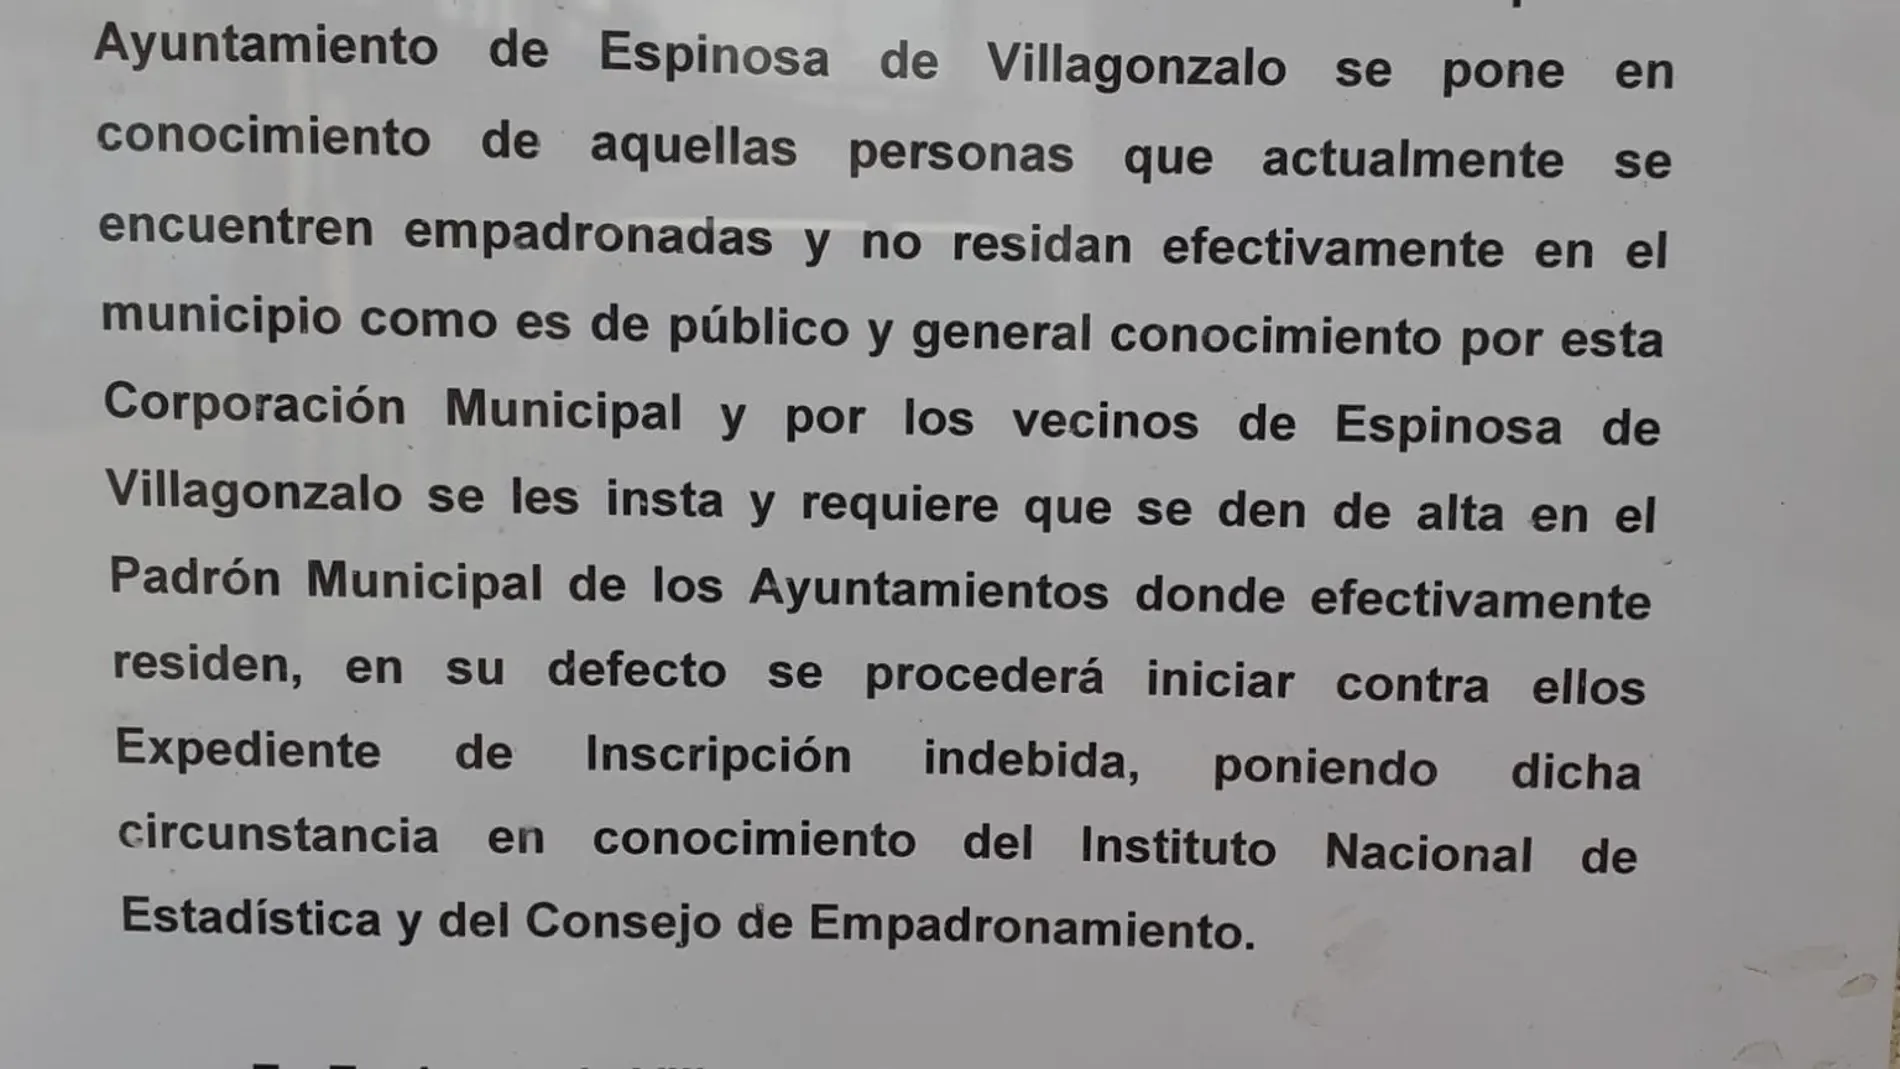 Edicto del Ayuntamiento de Espinosa de Villagonzalo donde se avisa del "desempadronamiento" de los vecinos que no residan allí